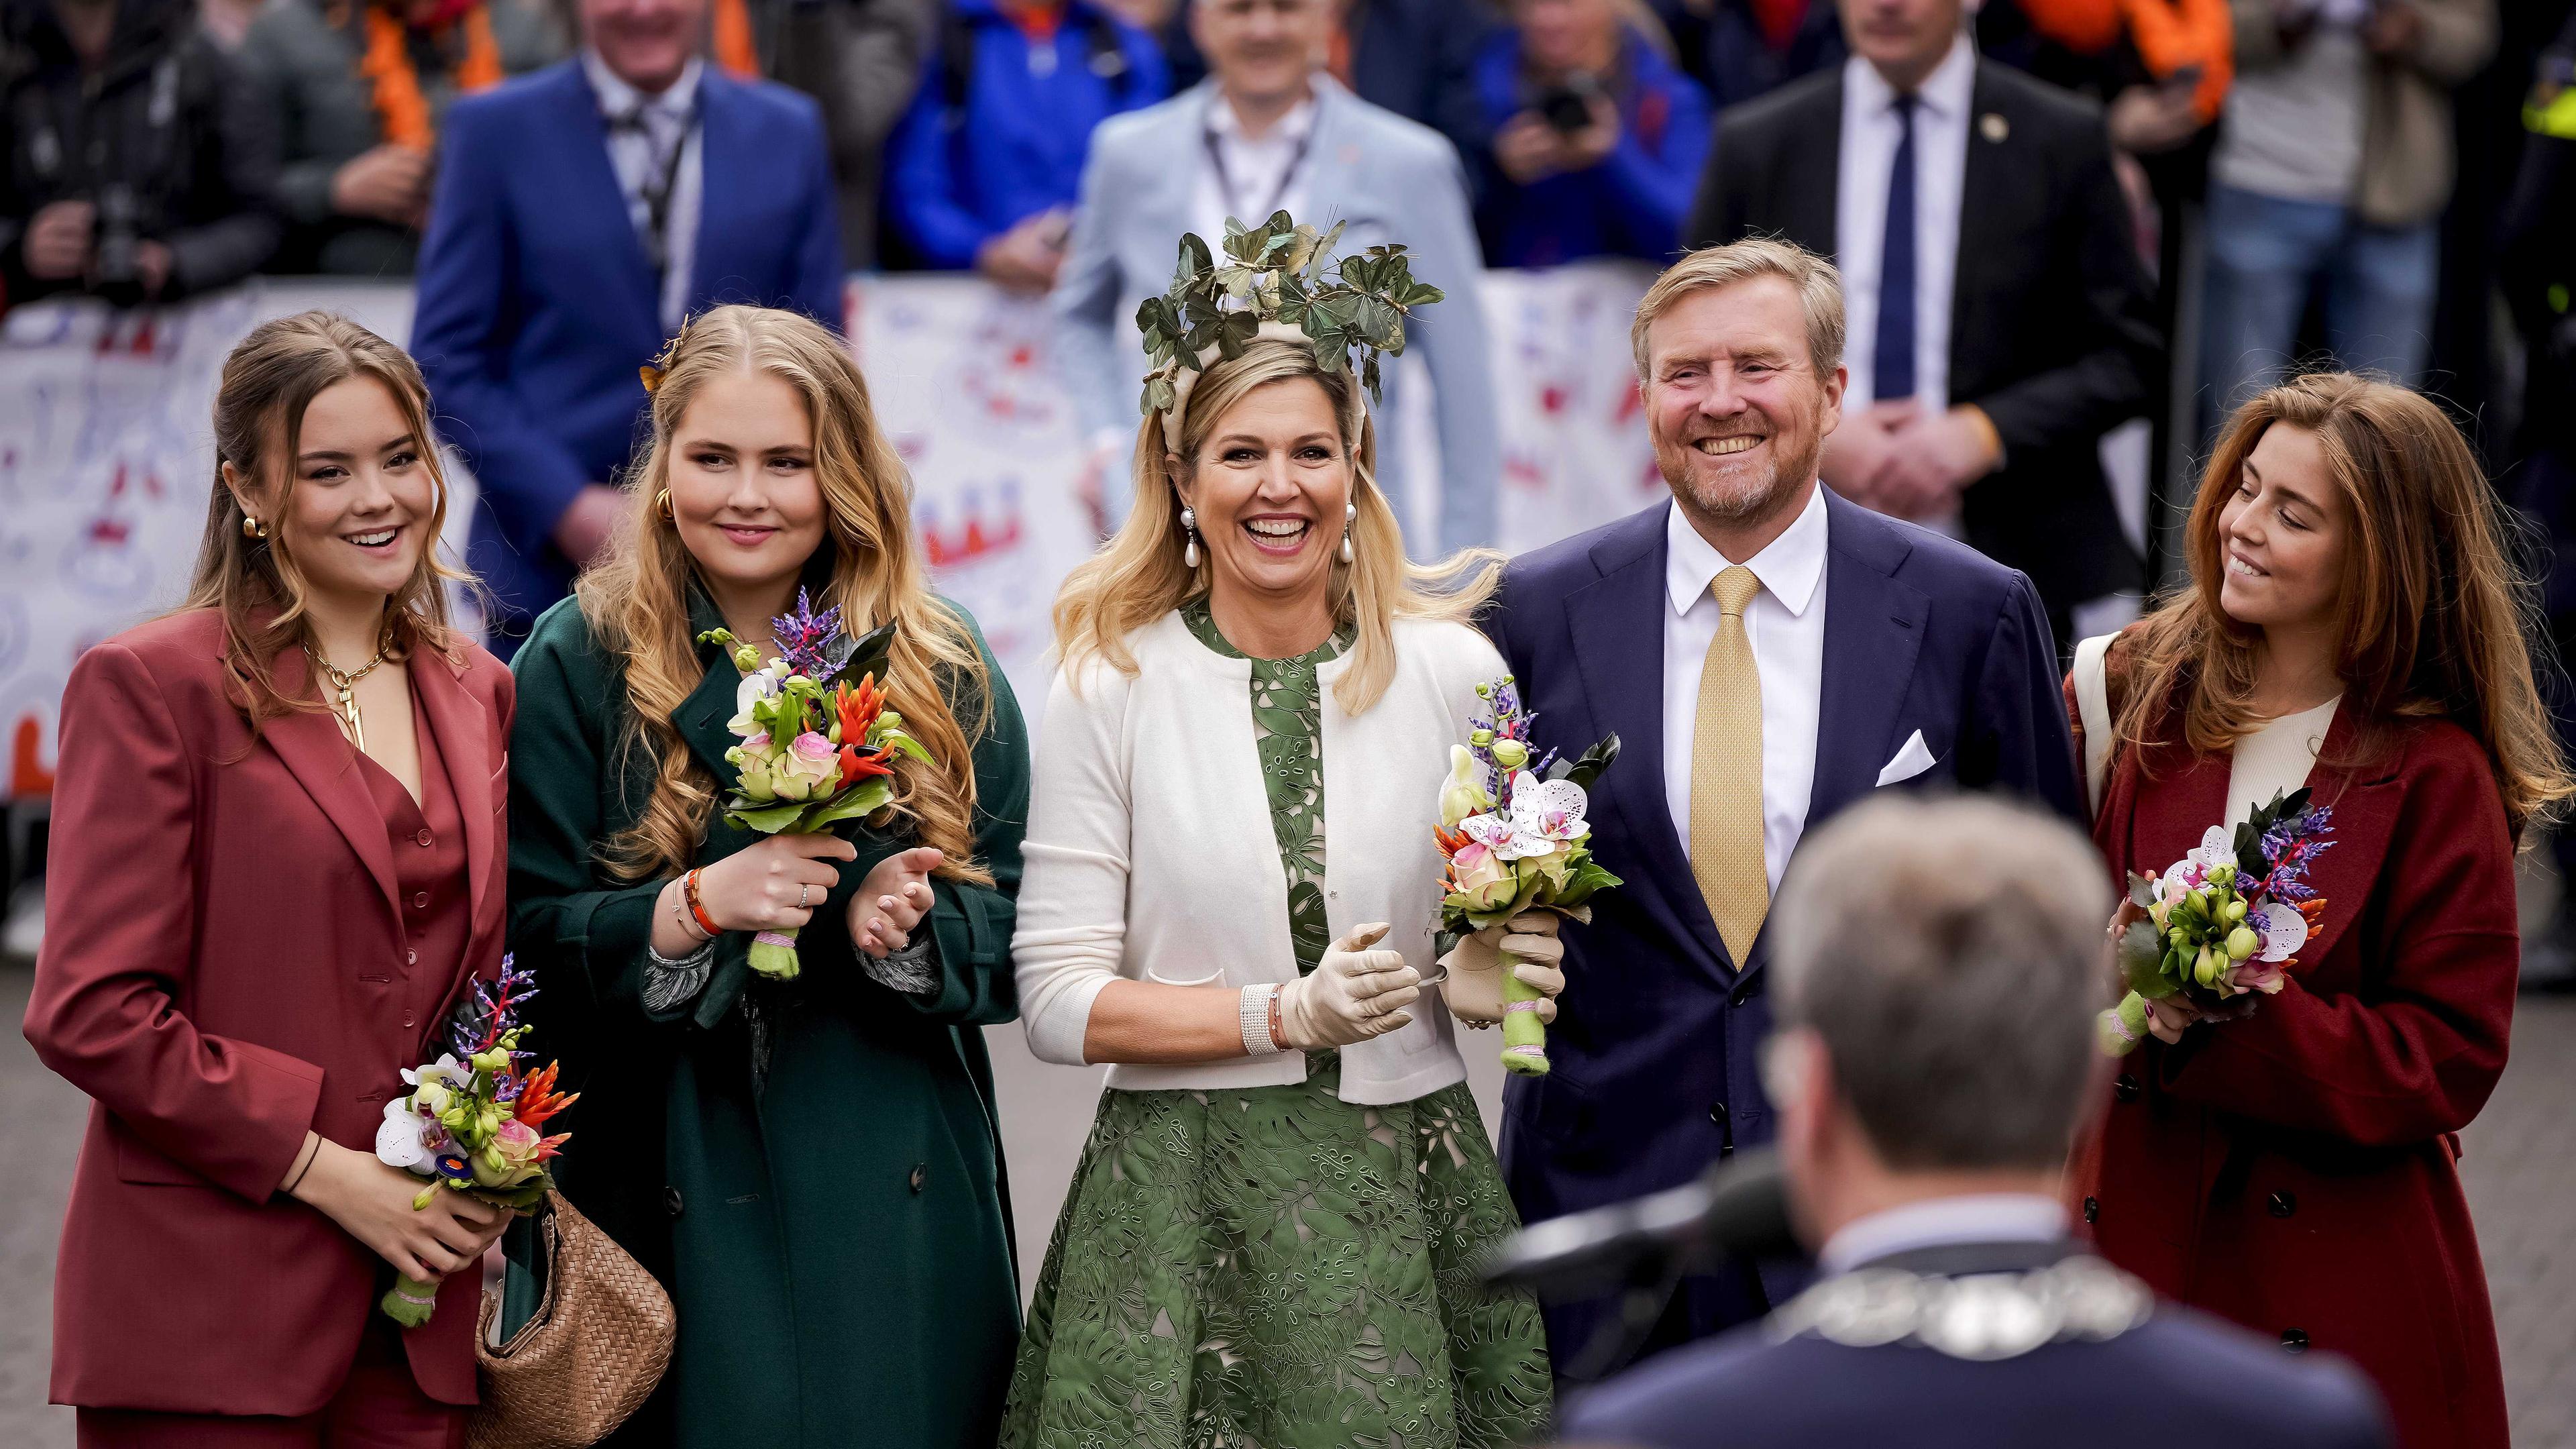 Die Königsfamilie feiert in Emmen den Königstag mit Blumen in der Hand